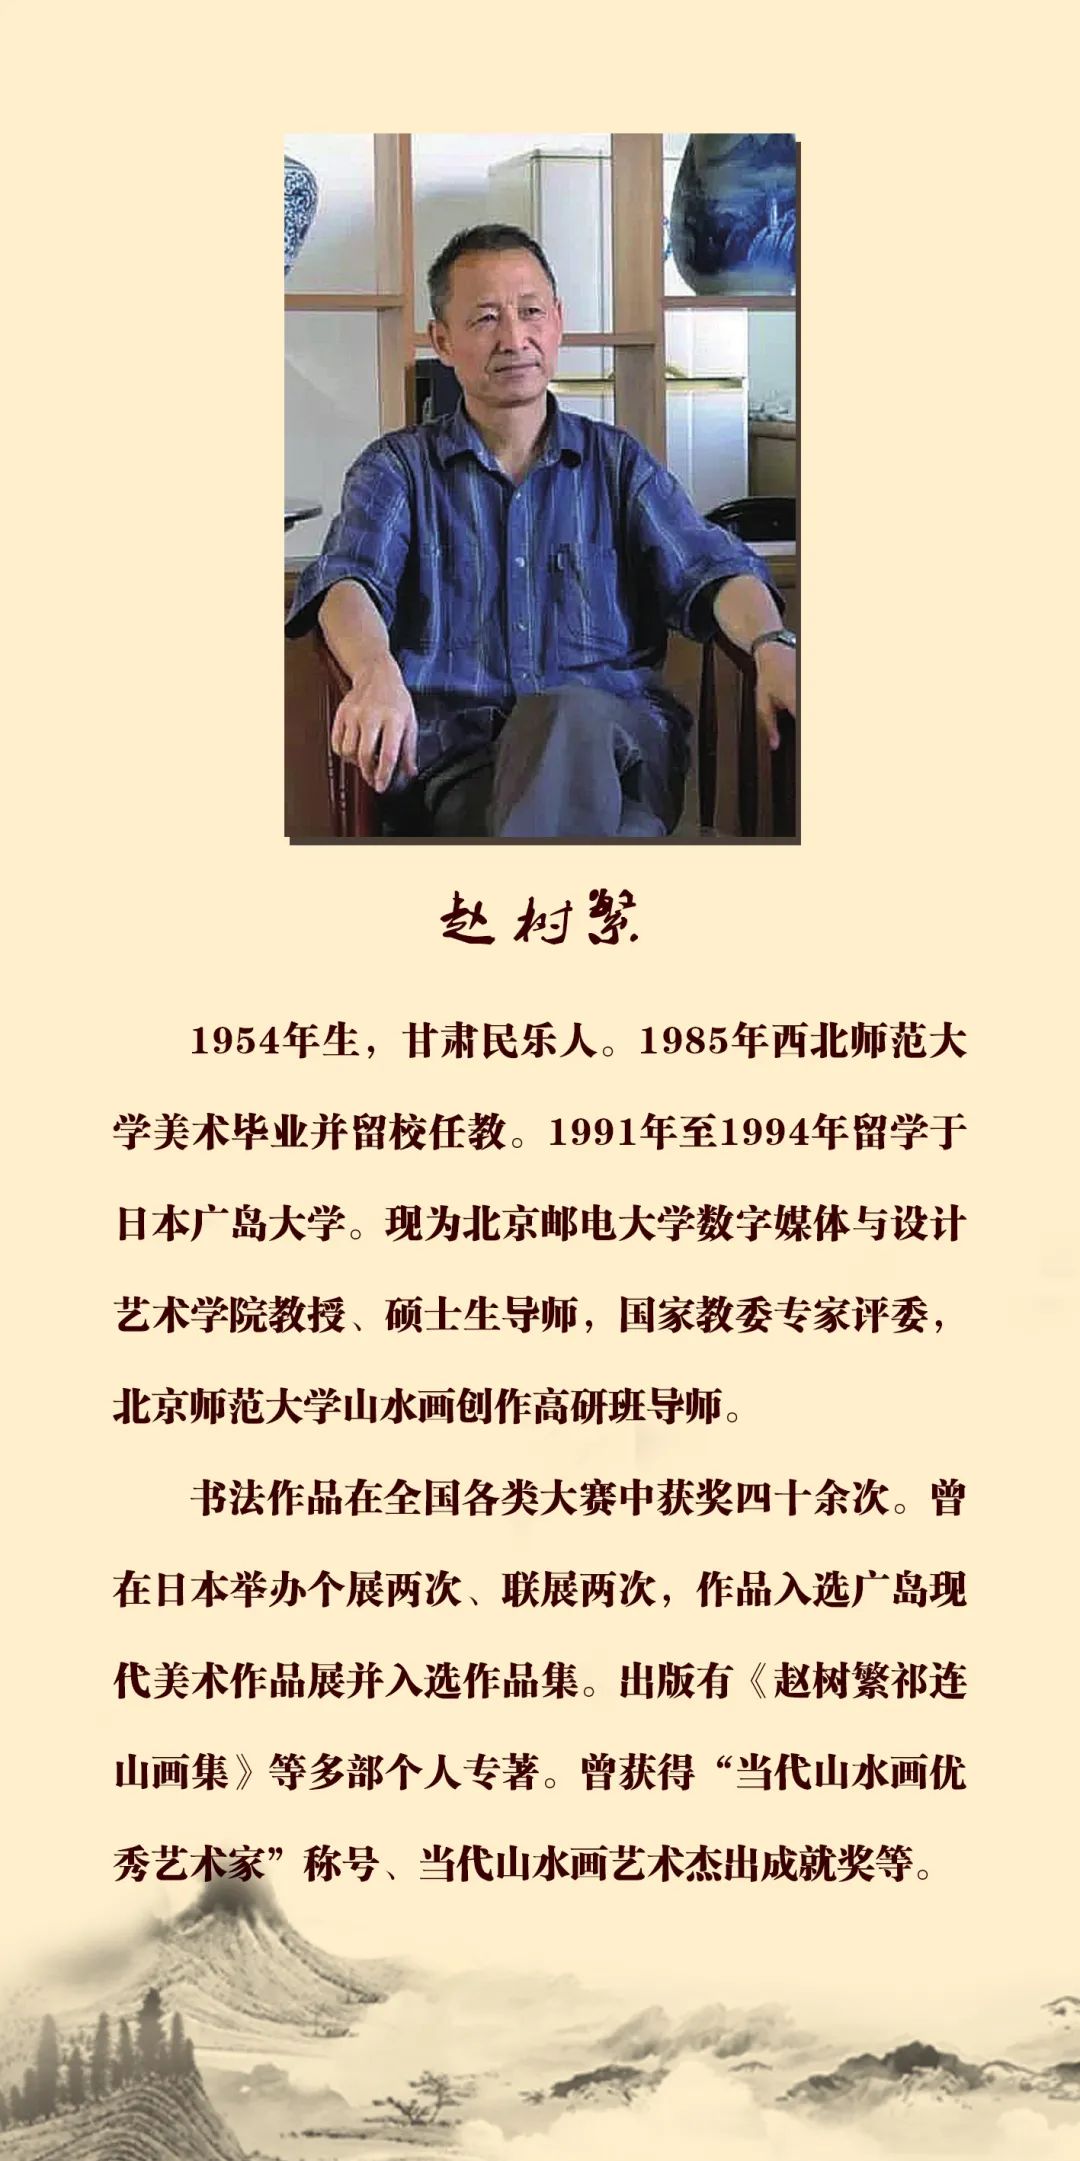 飞天舞墨馨香津沽——马国俊、赵树繁、陈福春书画作品联谊展将于10月16日开幕